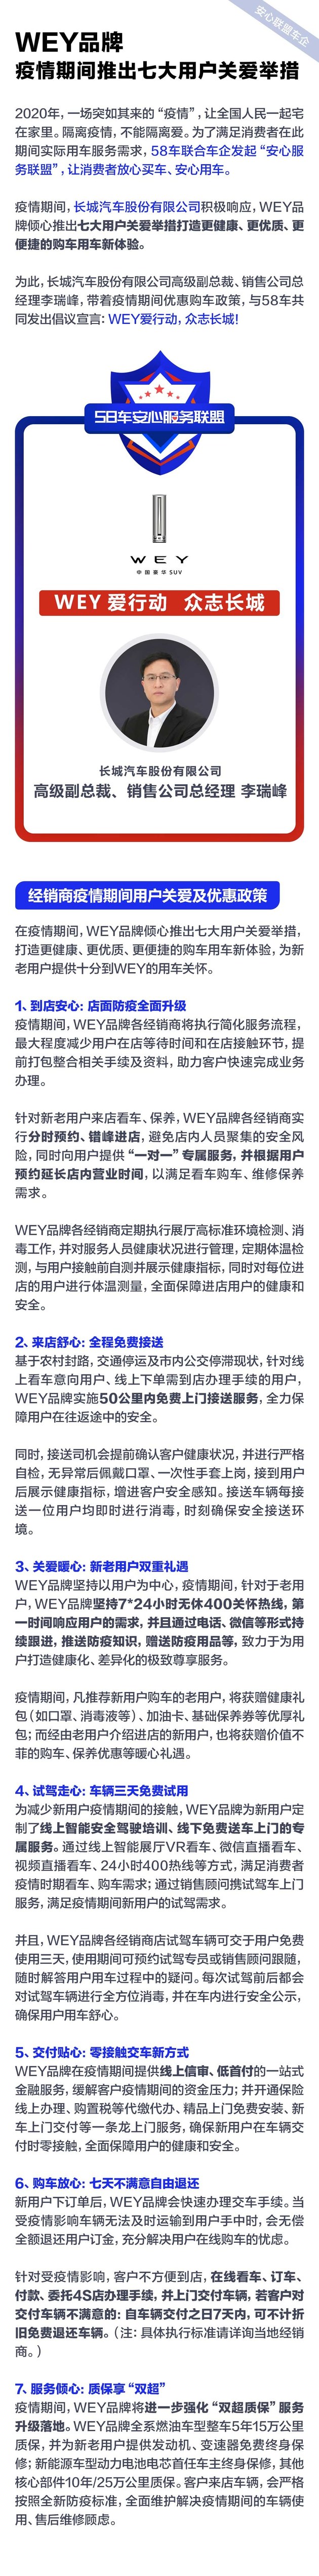 沐鸣2总代平台_WEY品牌 疫情期间推出七大用户关爱举措